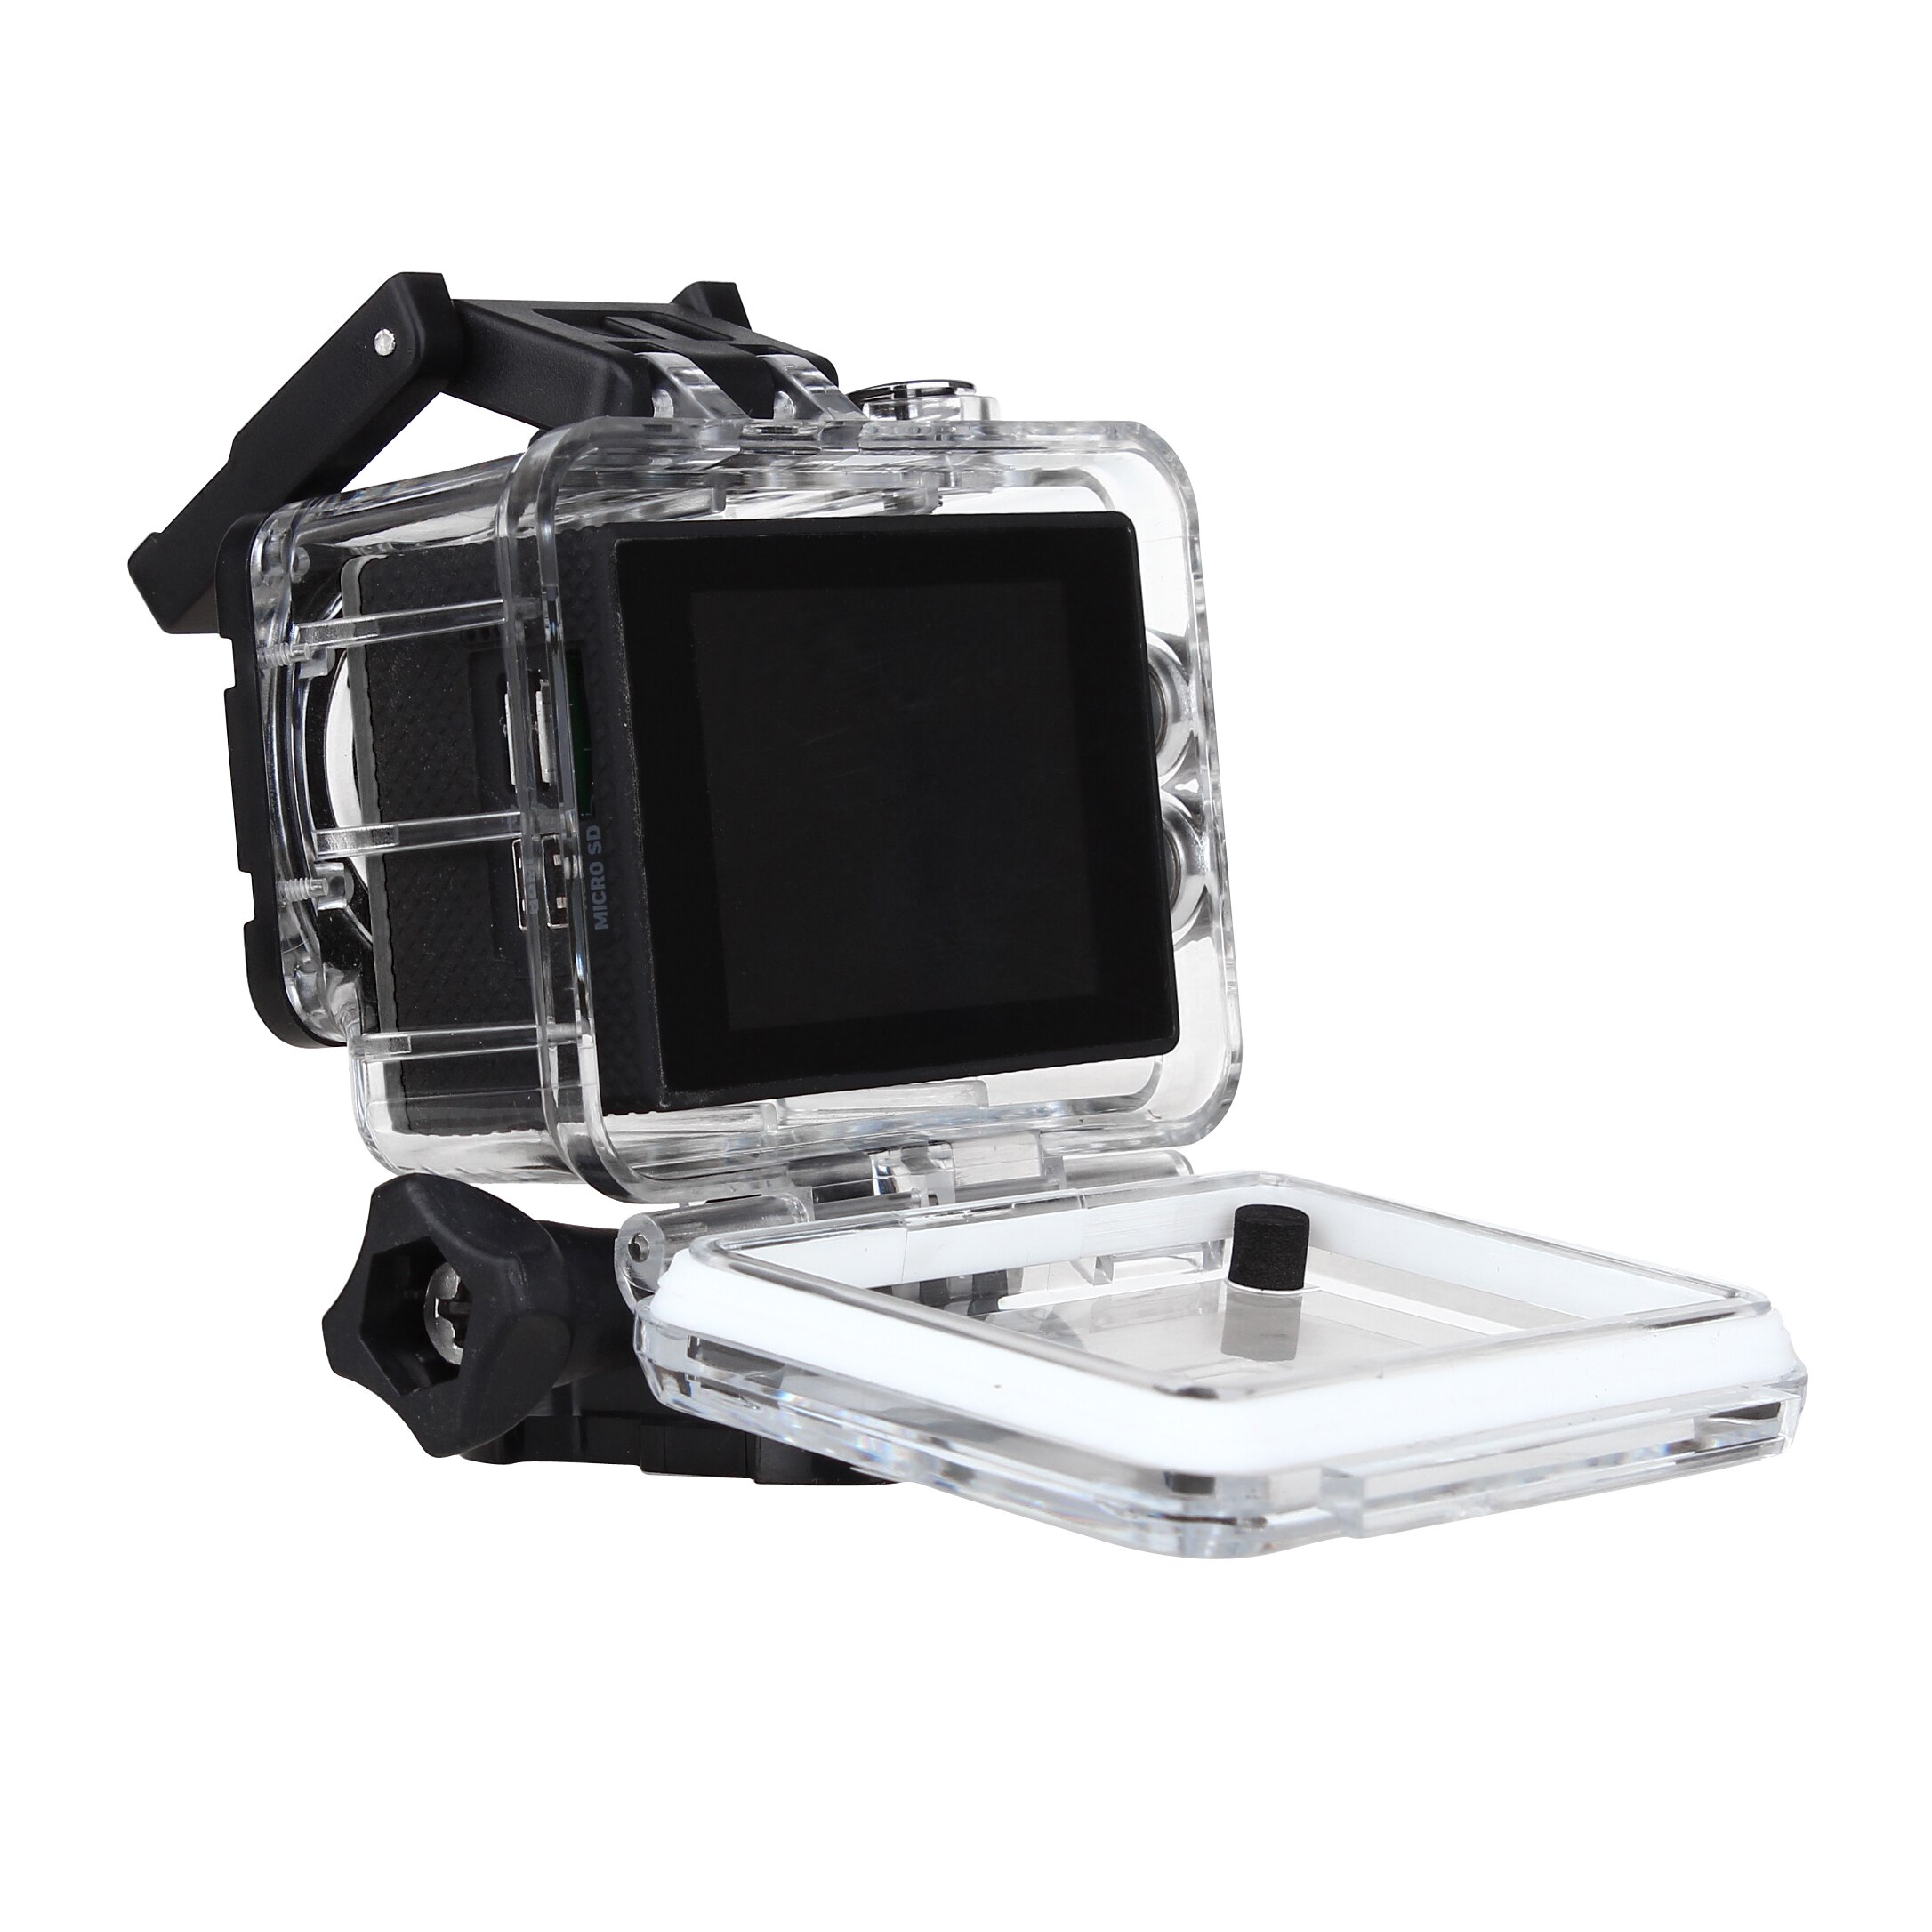 F60/F60R Sport Camera Wifi Action Camera HD 4K 24FPS 2.0" Screen Waterproof go Underwater 30M pro Sport DV Bike Helmet Camera